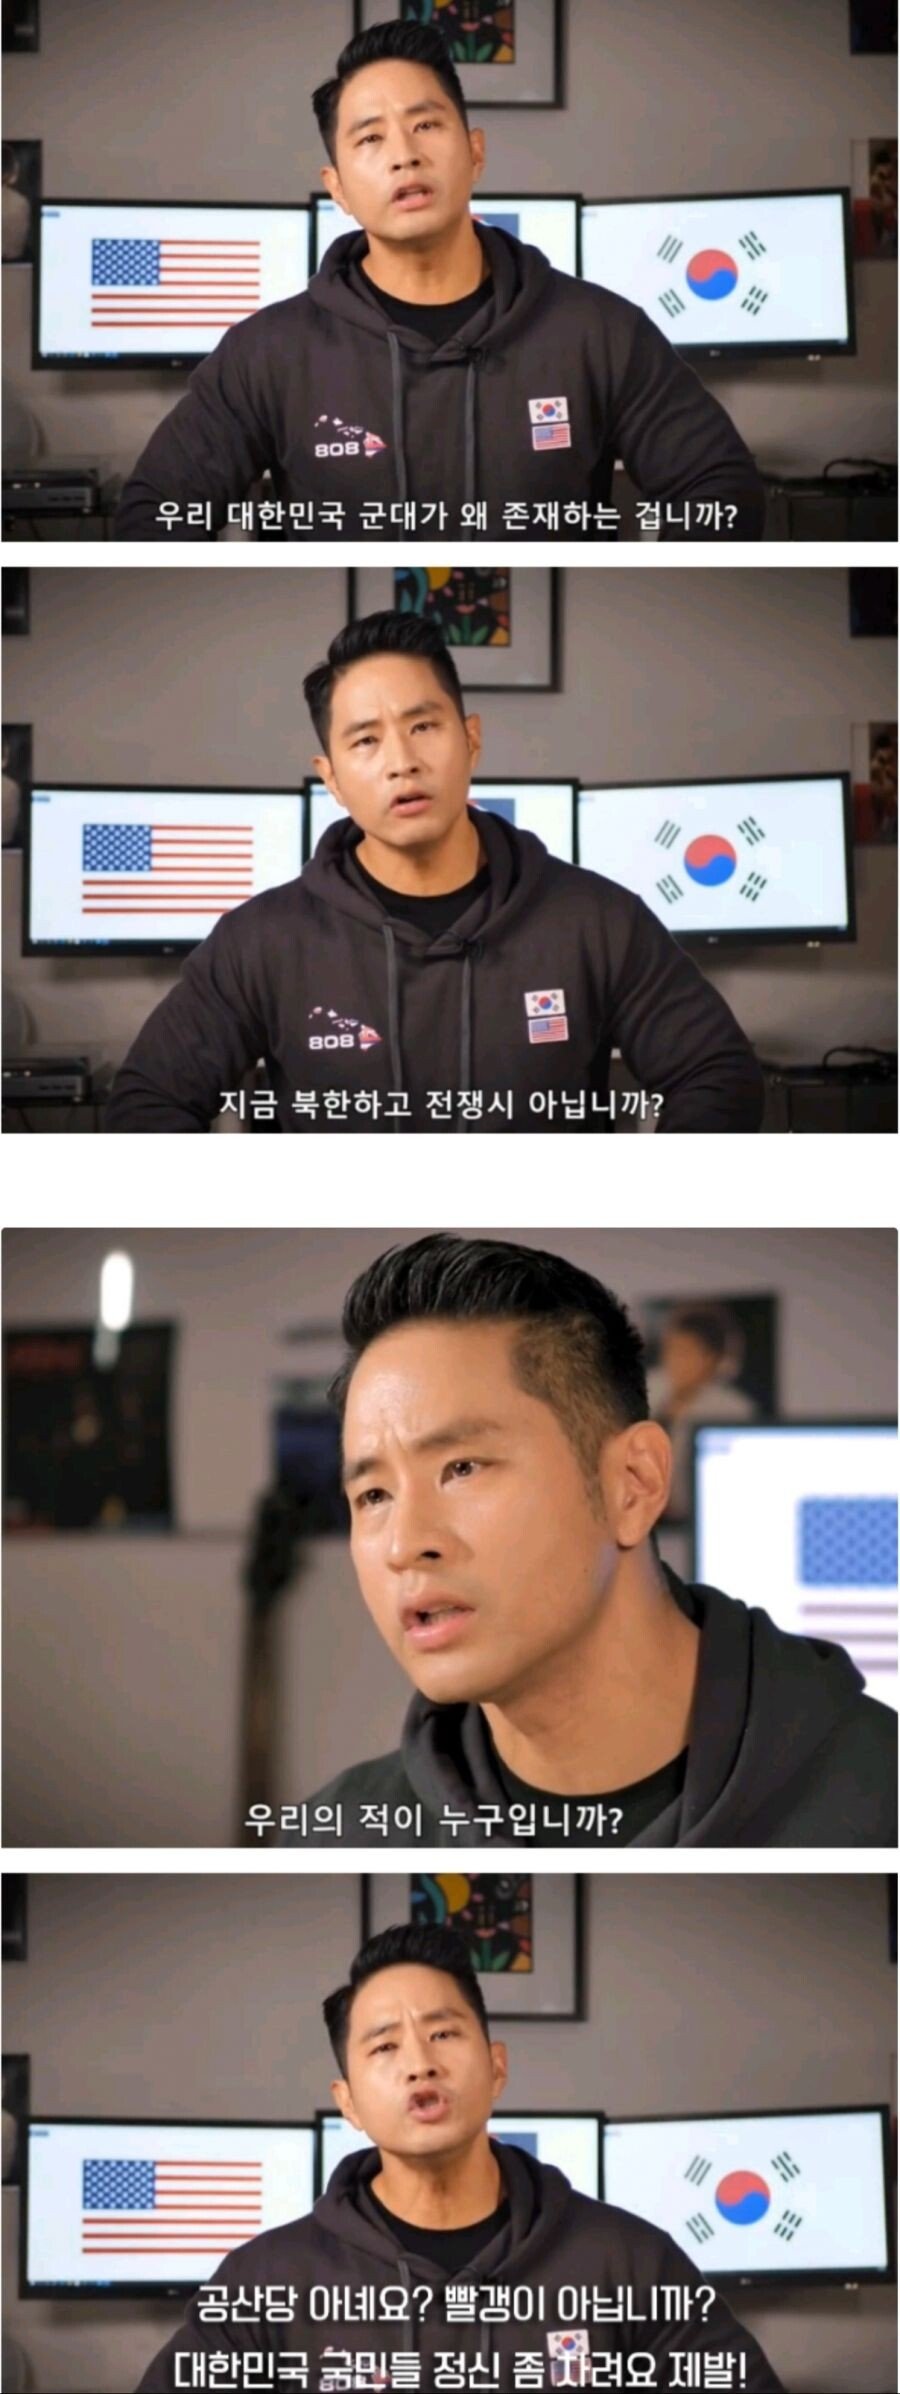 Steve Yoo to the Korean people